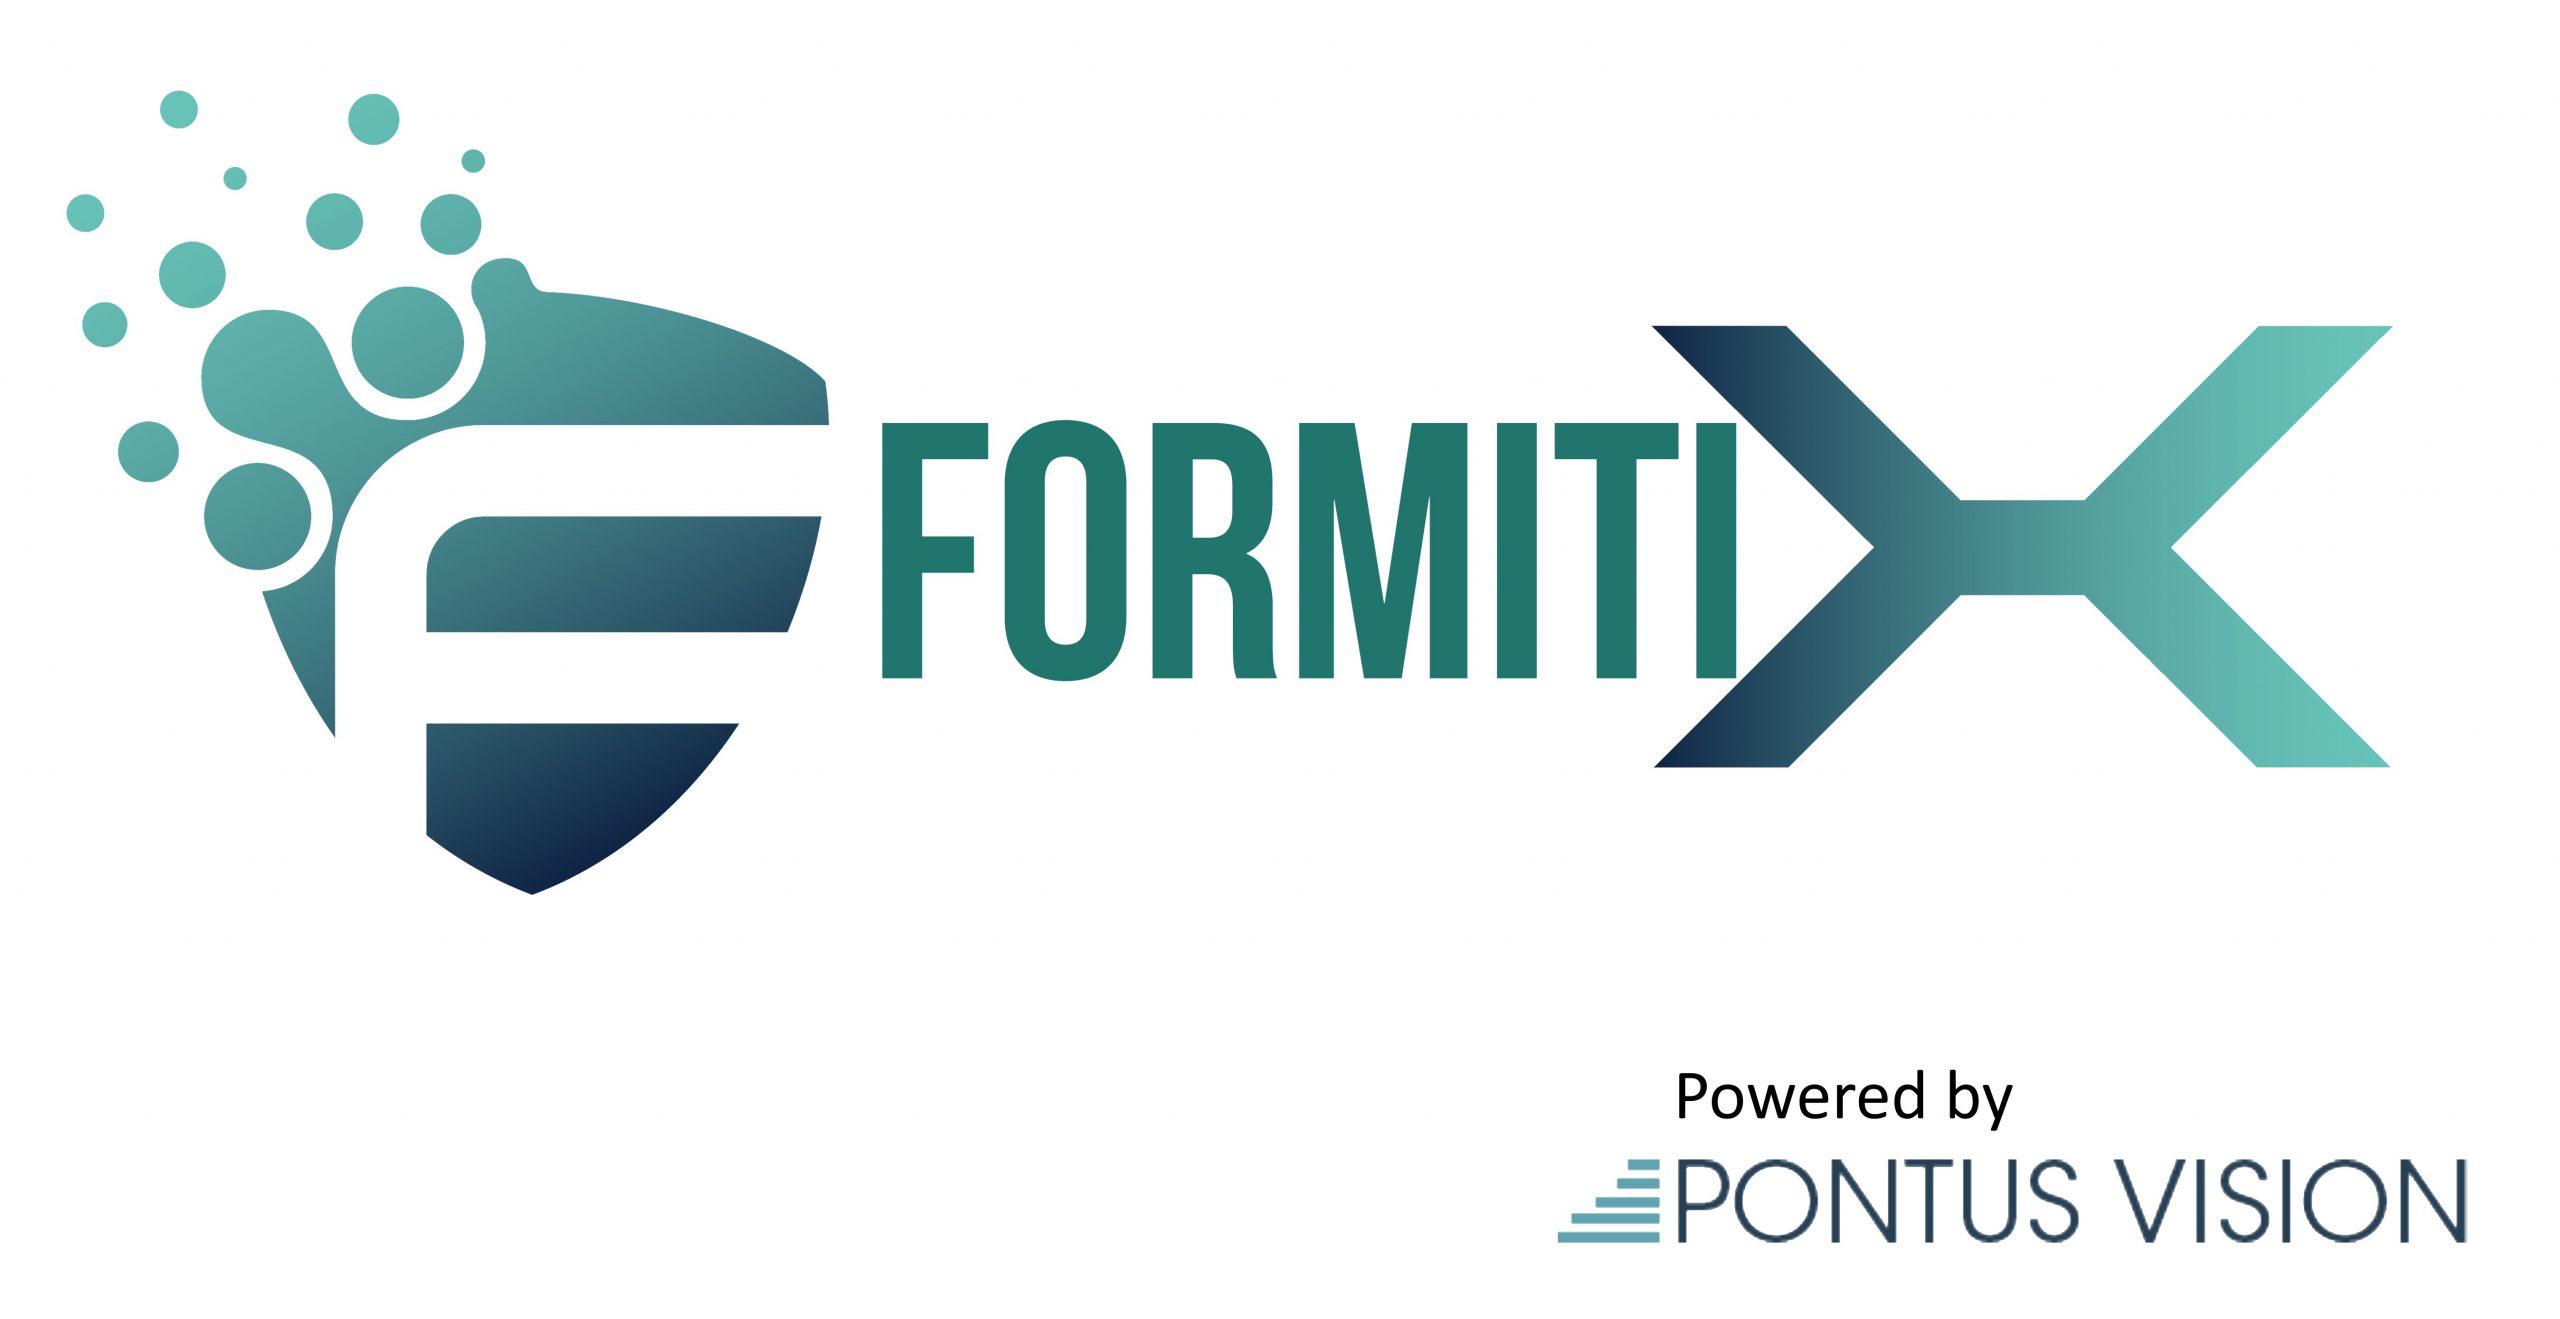 Formiti X - co-branded logo